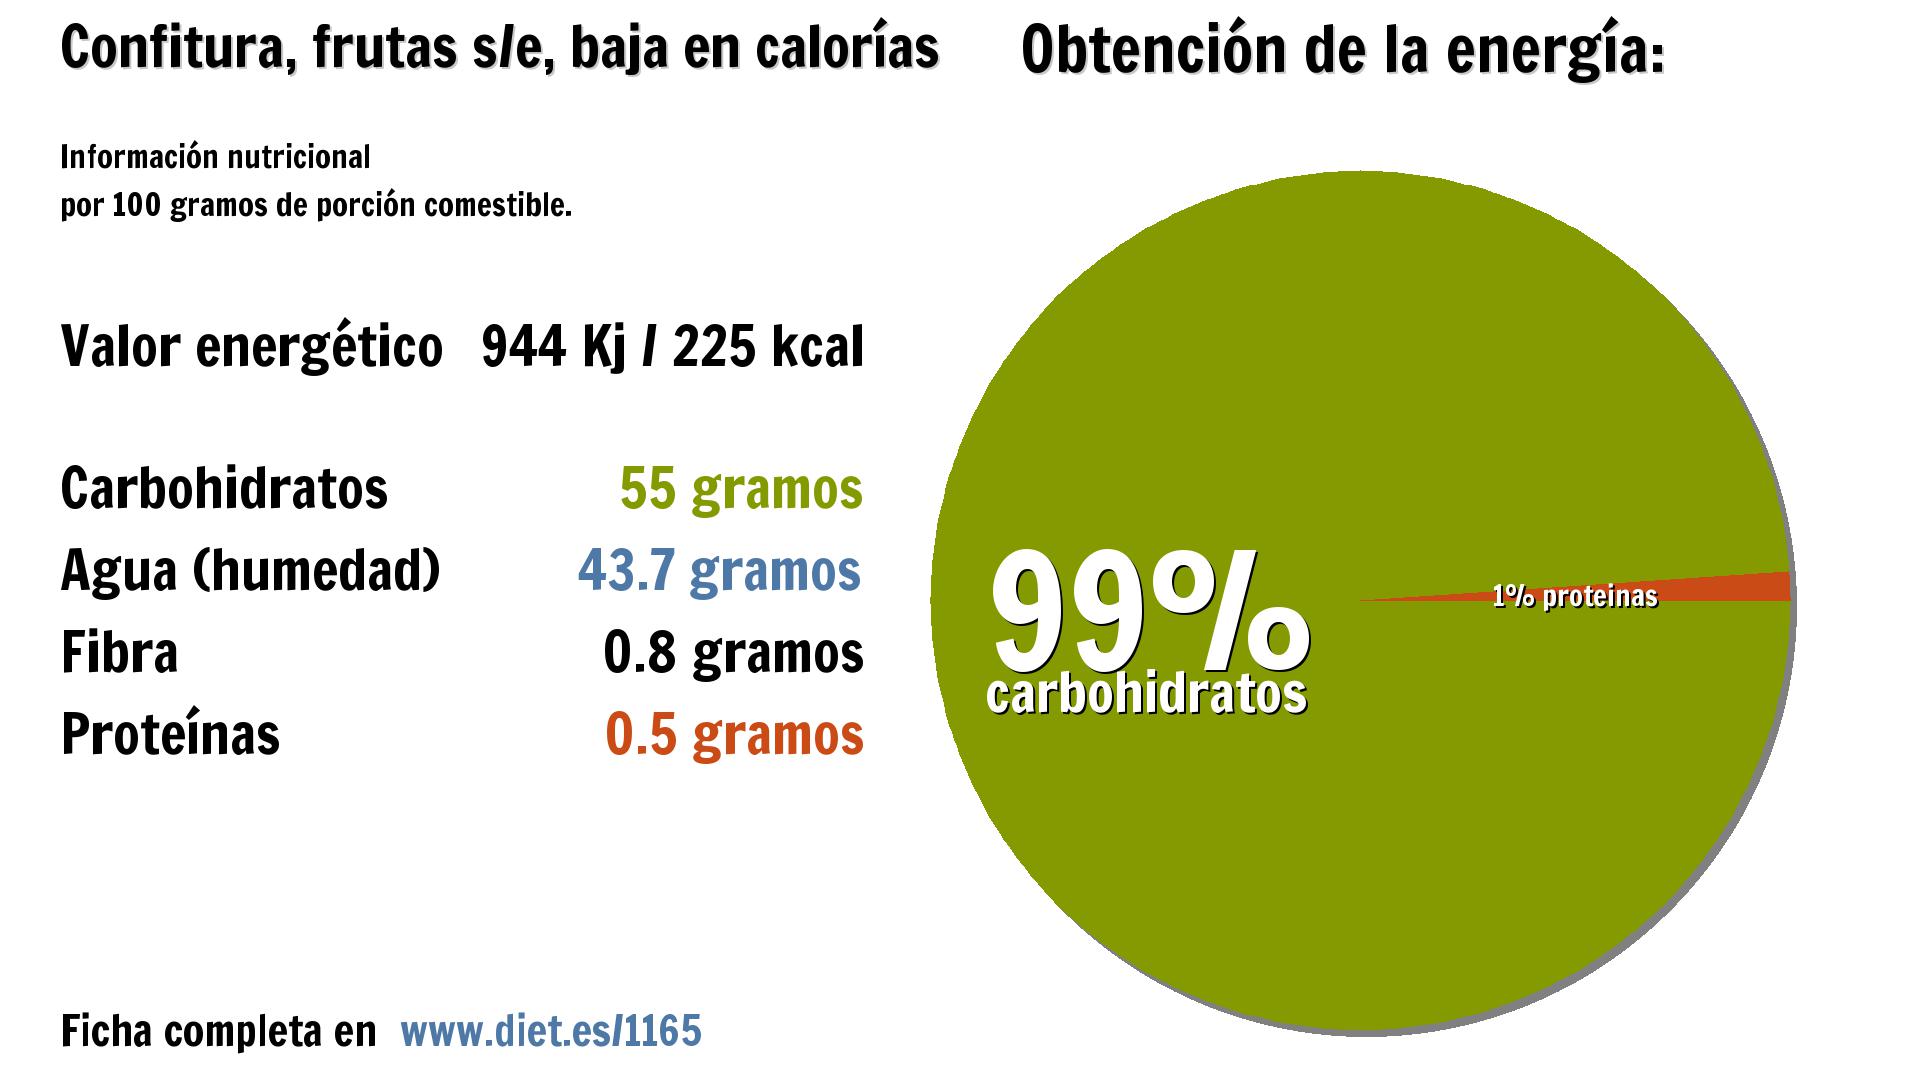 Confitura, frutas s/e, baja en calorías: energía 944 Kj, carbohidratos 55 g., agua 44 g., fibra 1 g. y proteínas 1 g.